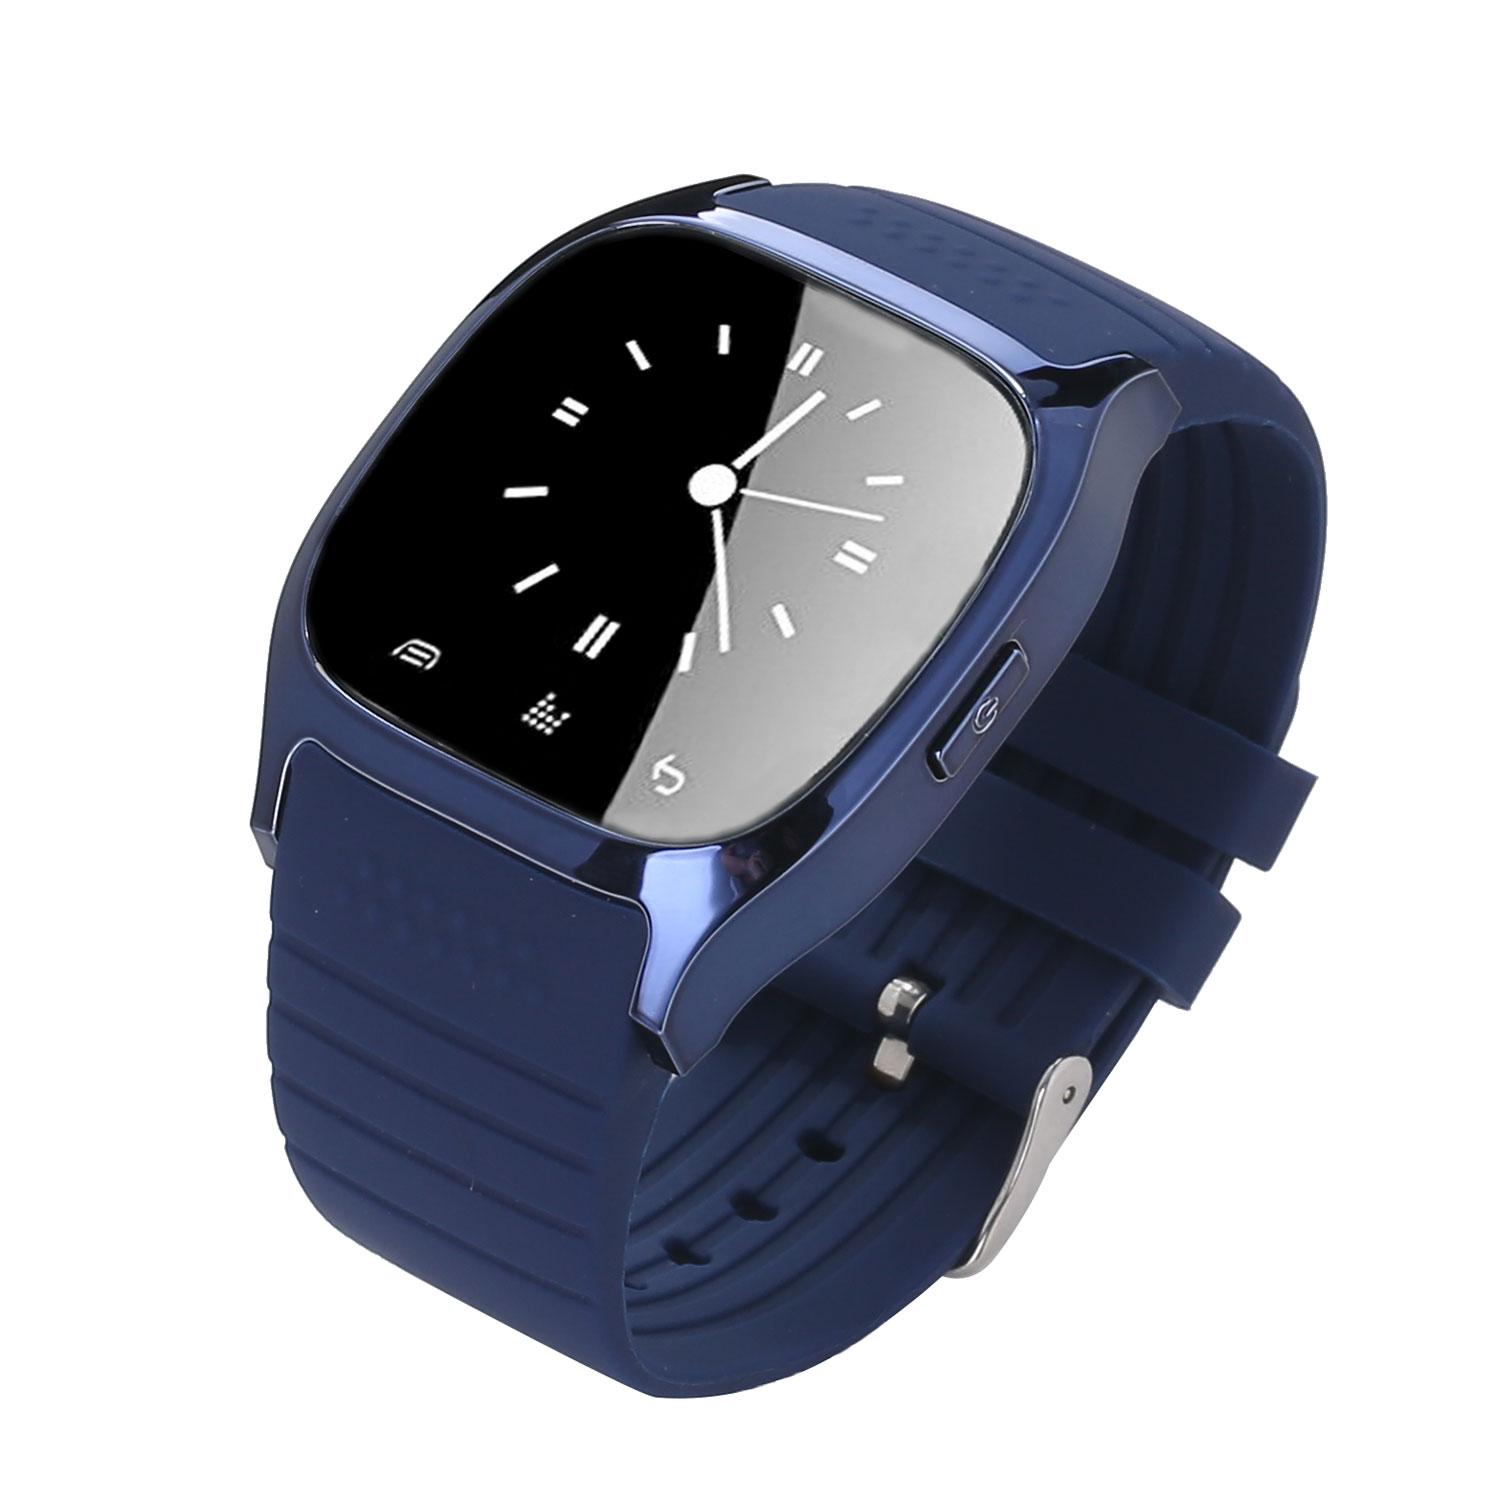 Đồng hồ đeo tay thông minh niceEshop kết nối Bluetooth với điện thoại thông minh, Xanh dương